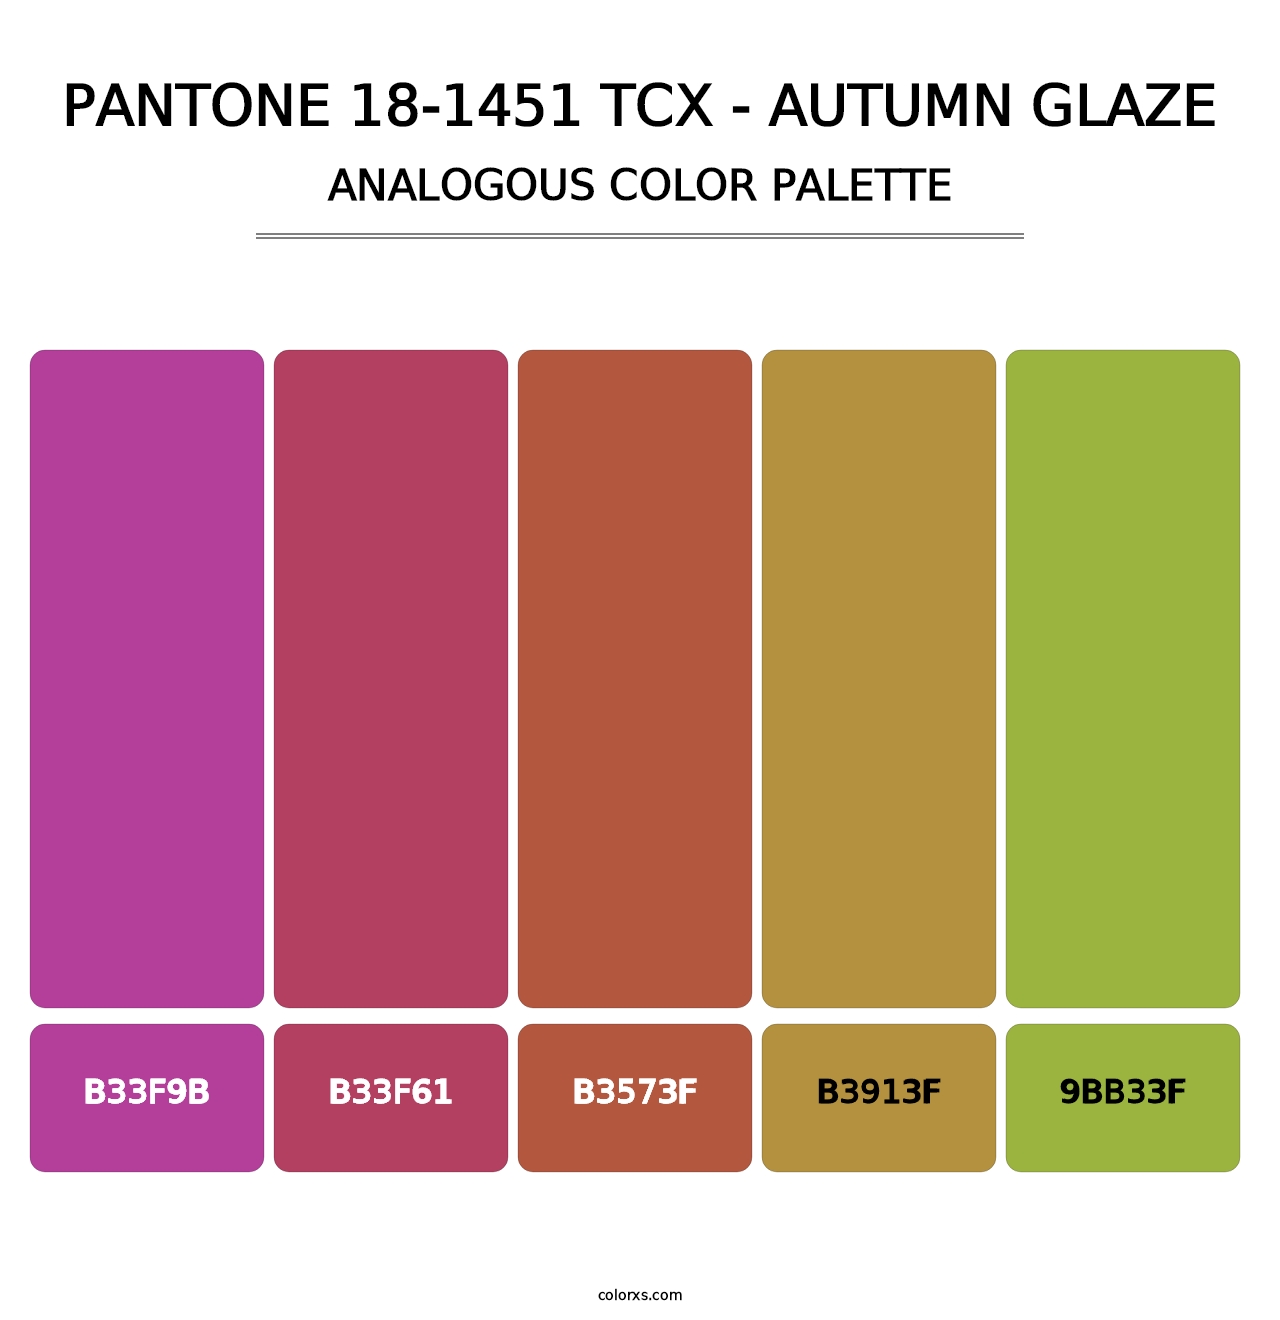 PANTONE 18-1451 TCX - Autumn Glaze - Analogous Color Palette